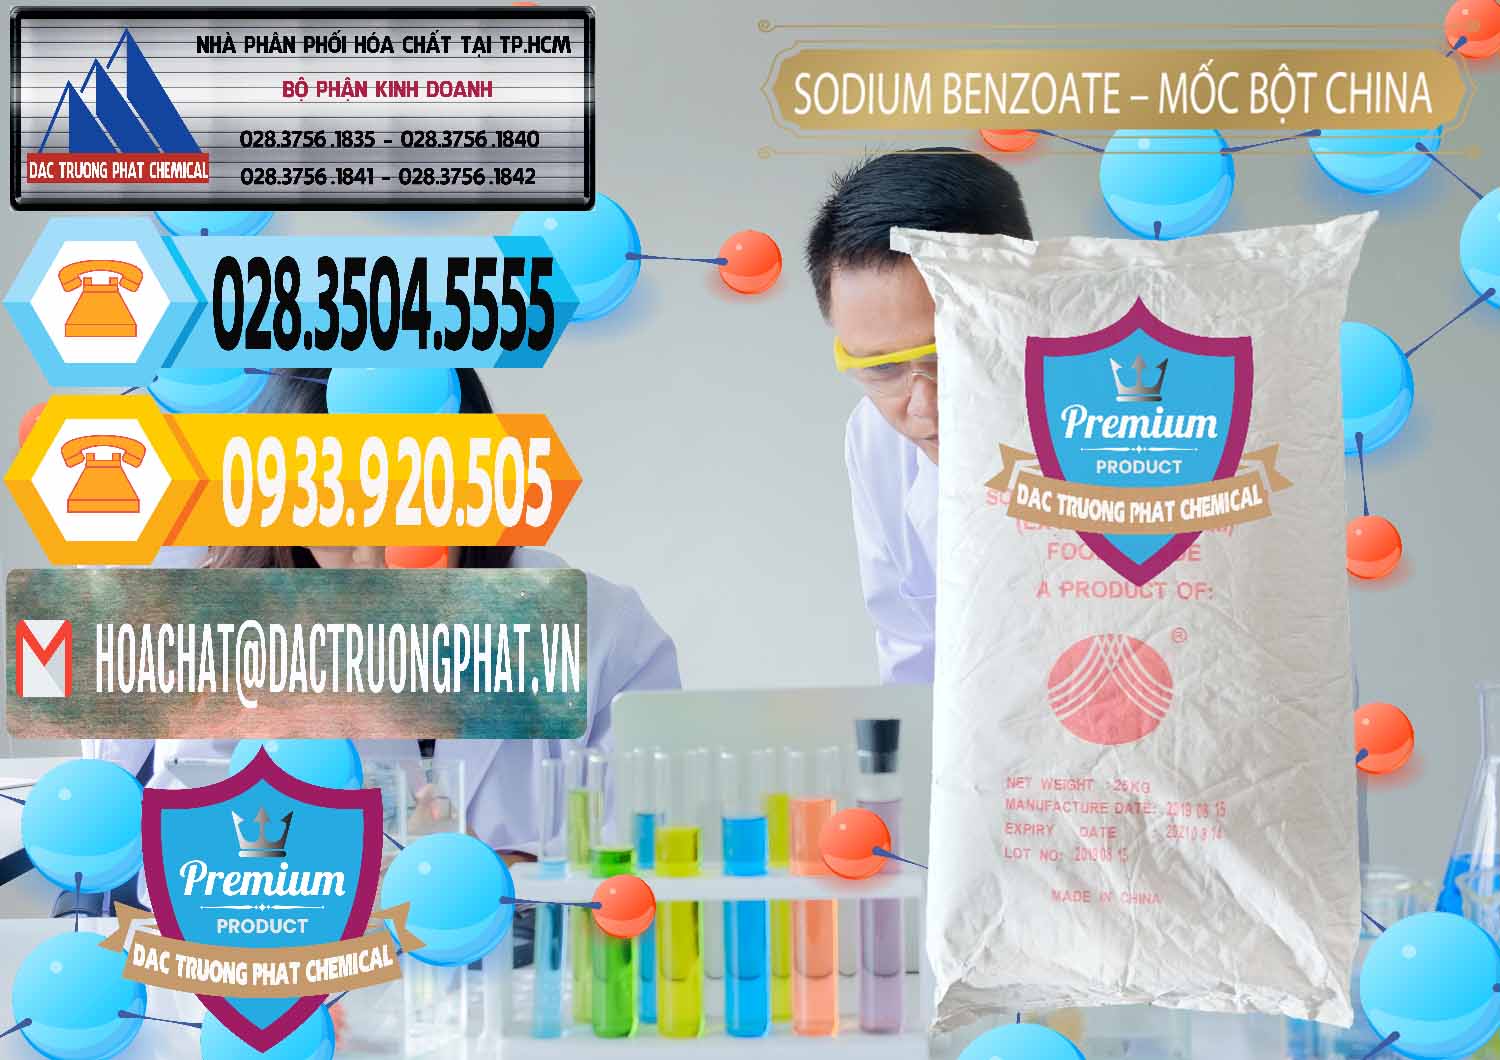 Đơn vị chuyên kinh doanh _ bán Sodium Benzoate - Mốc Bột Chữ Cam Food Grade Trung Quốc China - 0135 - Nhà phân phối và cung cấp hóa chất tại TP.HCM - hoachattayrua.net